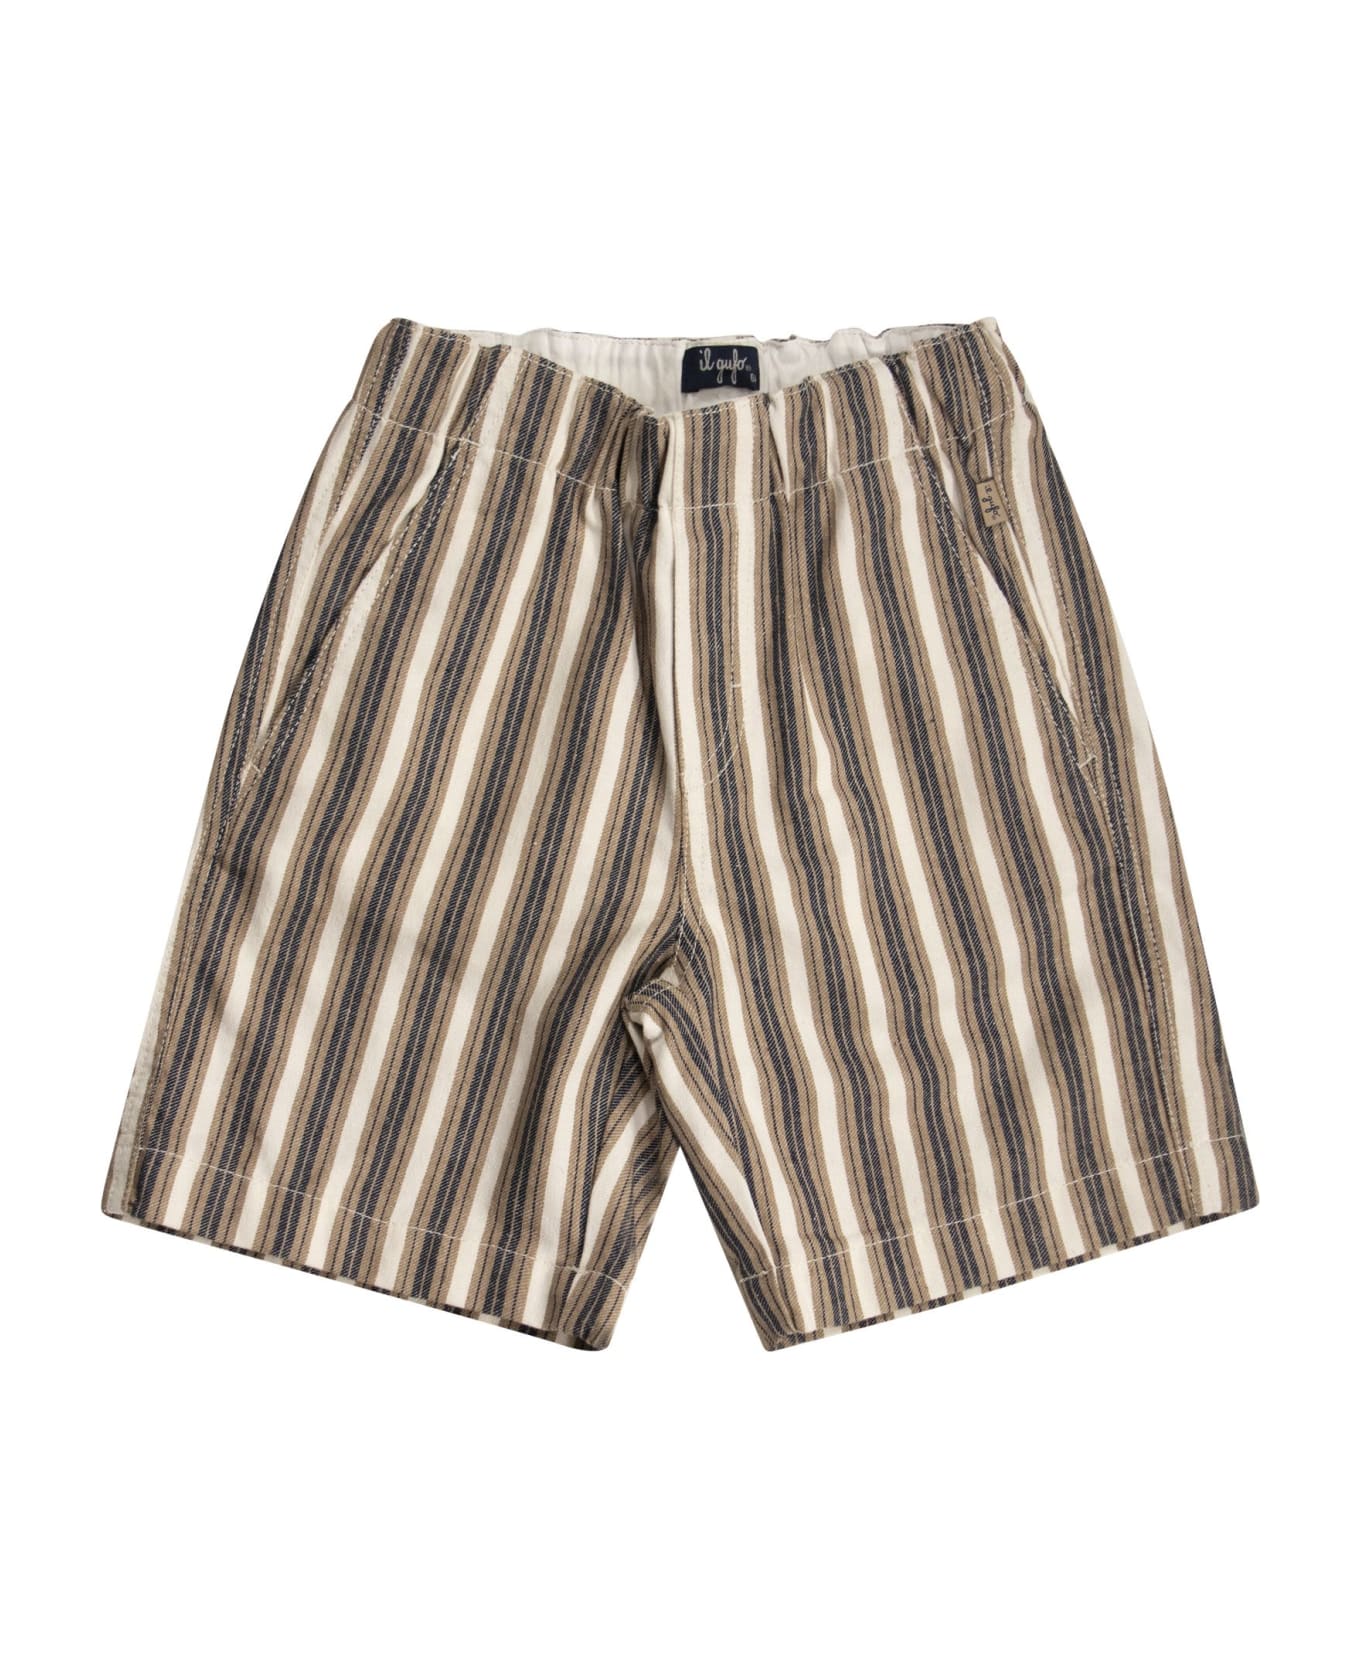 Il Gufo Striped Cotton Bermuda Shorts - Sand ボトムス